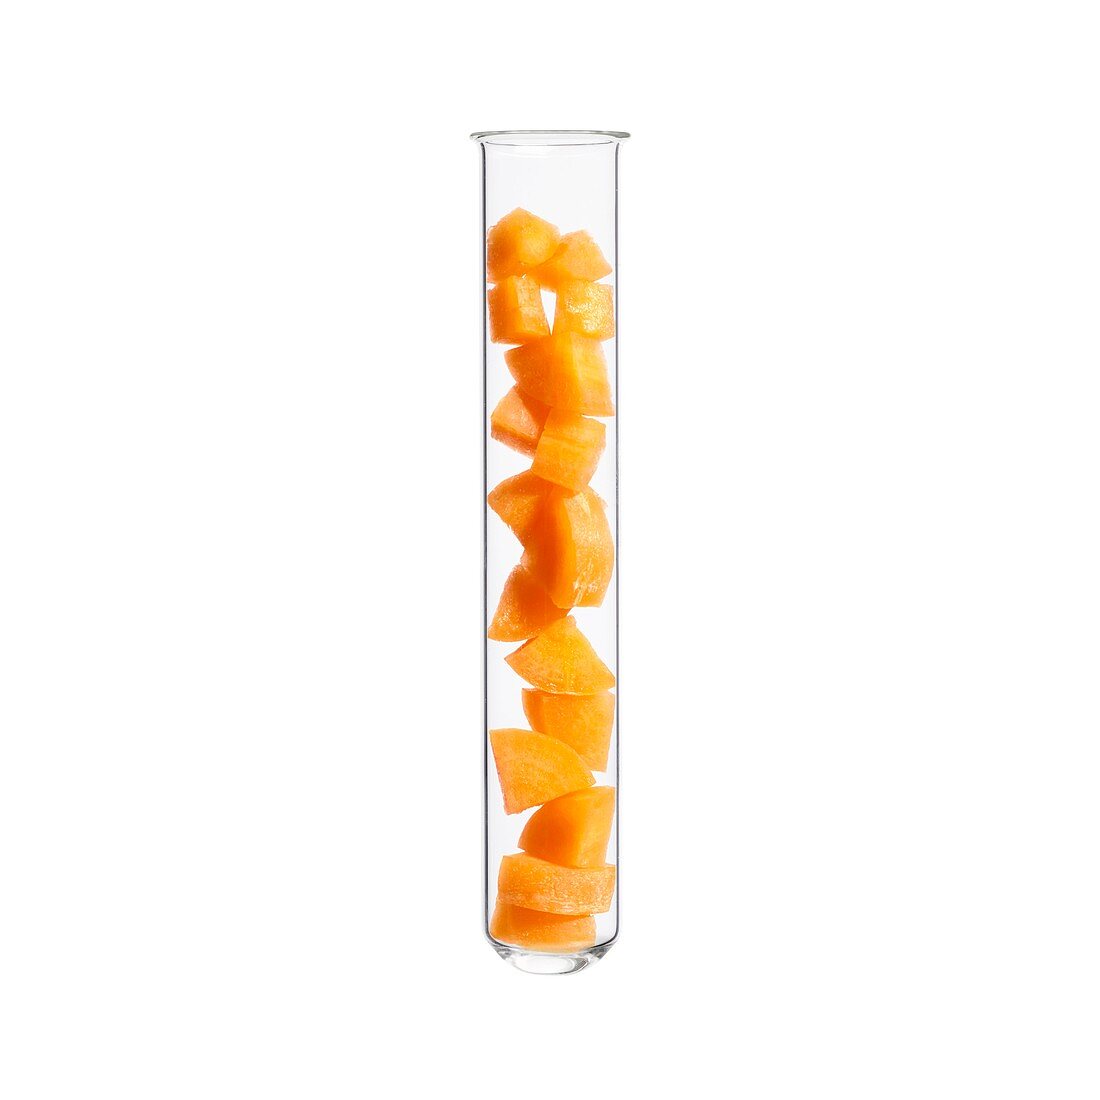 Carrot in test tube